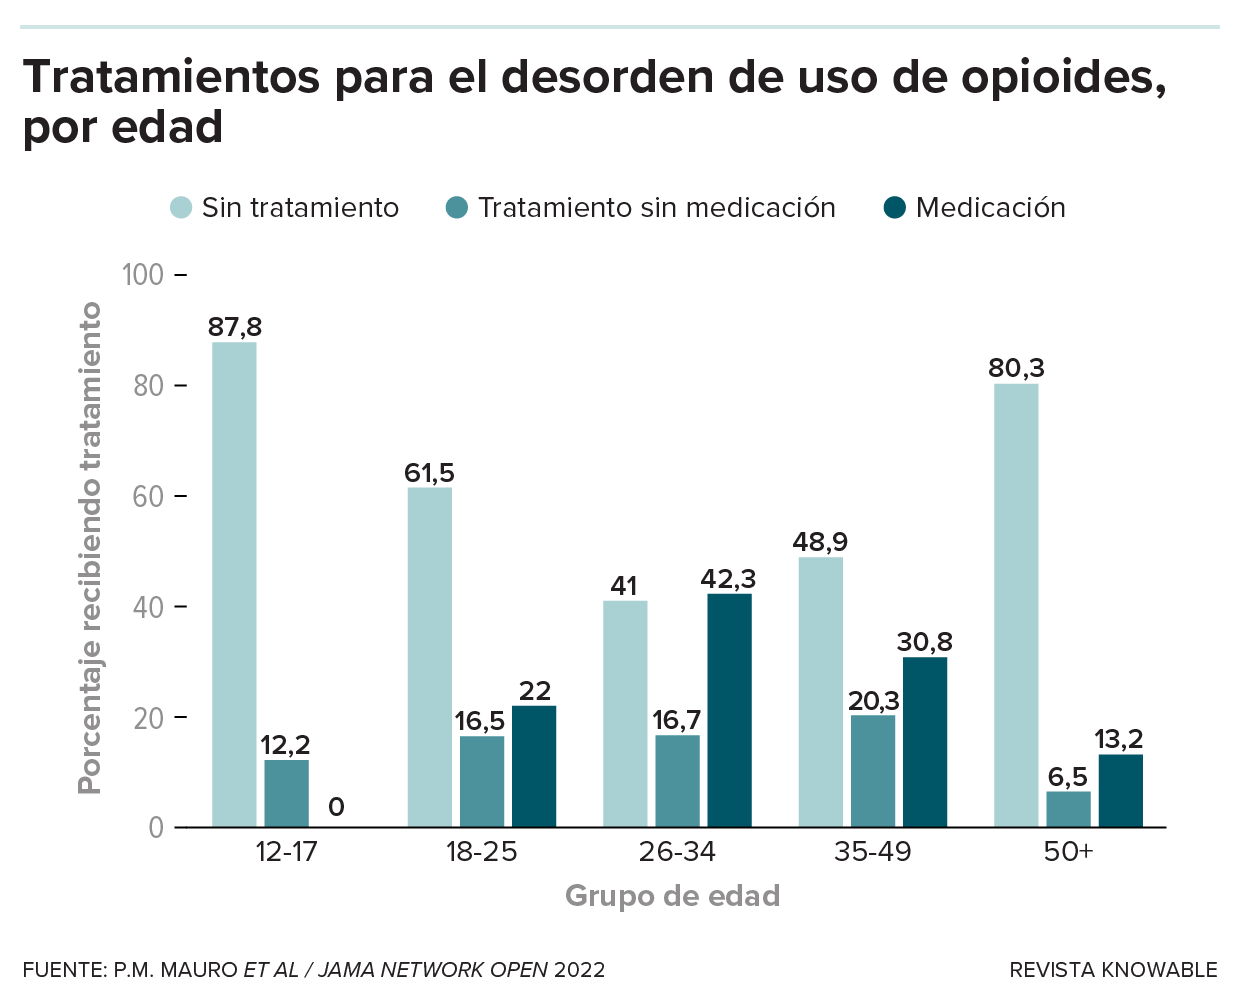 Gráfico de barras que muestra la proporción de personas de diferentes edades que reciben cada uno de los posibles tratamientos para el trastorno por consumo de opiáceos.